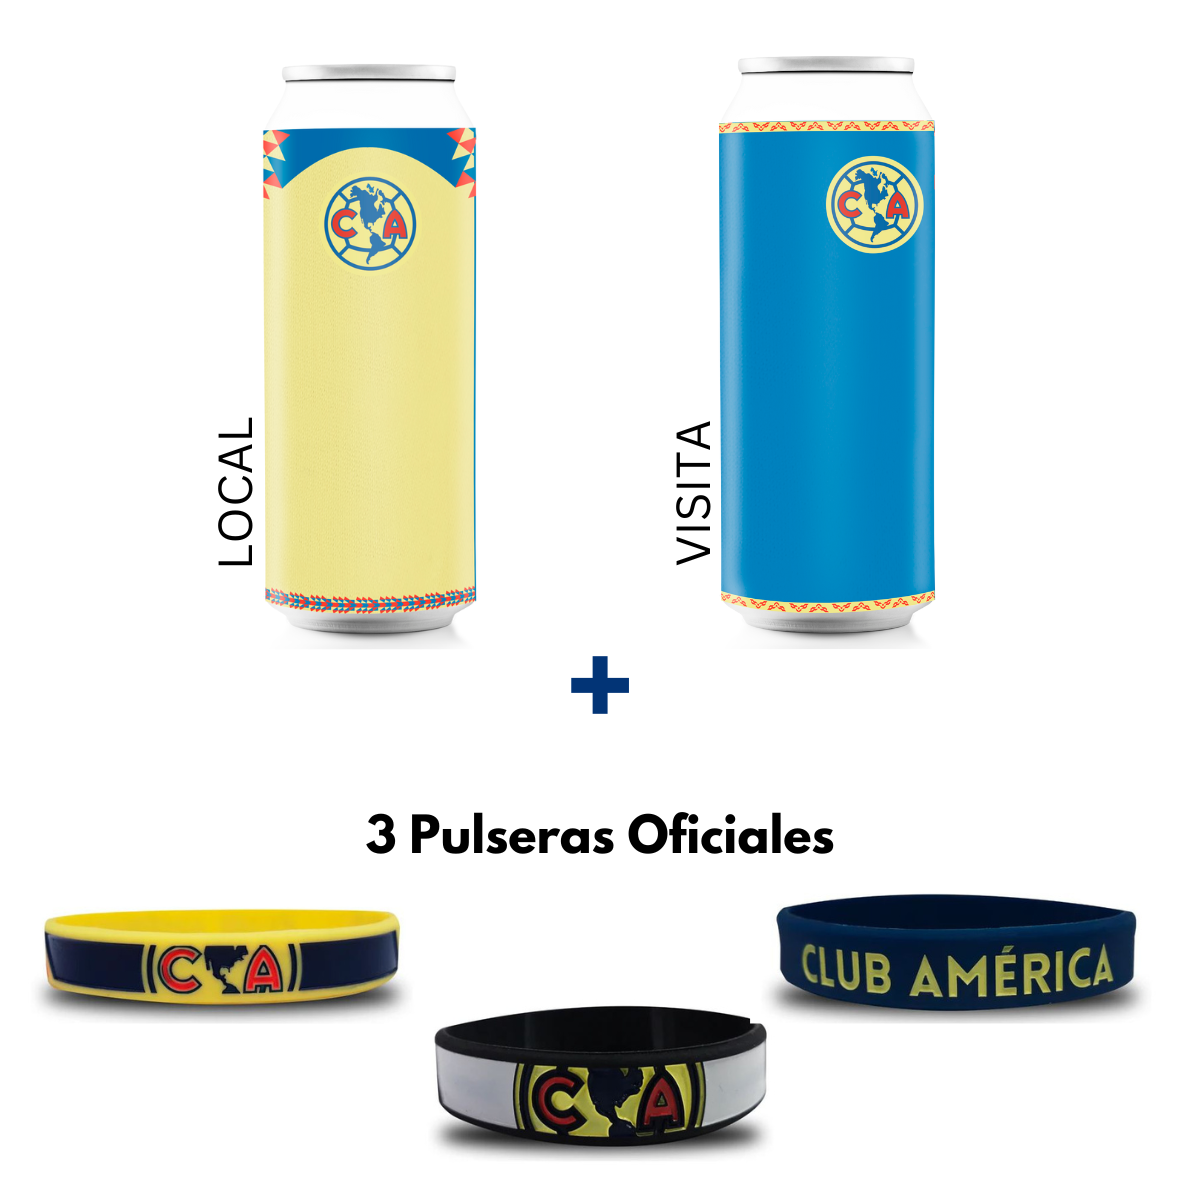 2 Termos Oficiales Club América Personalizados + 3 pulseras